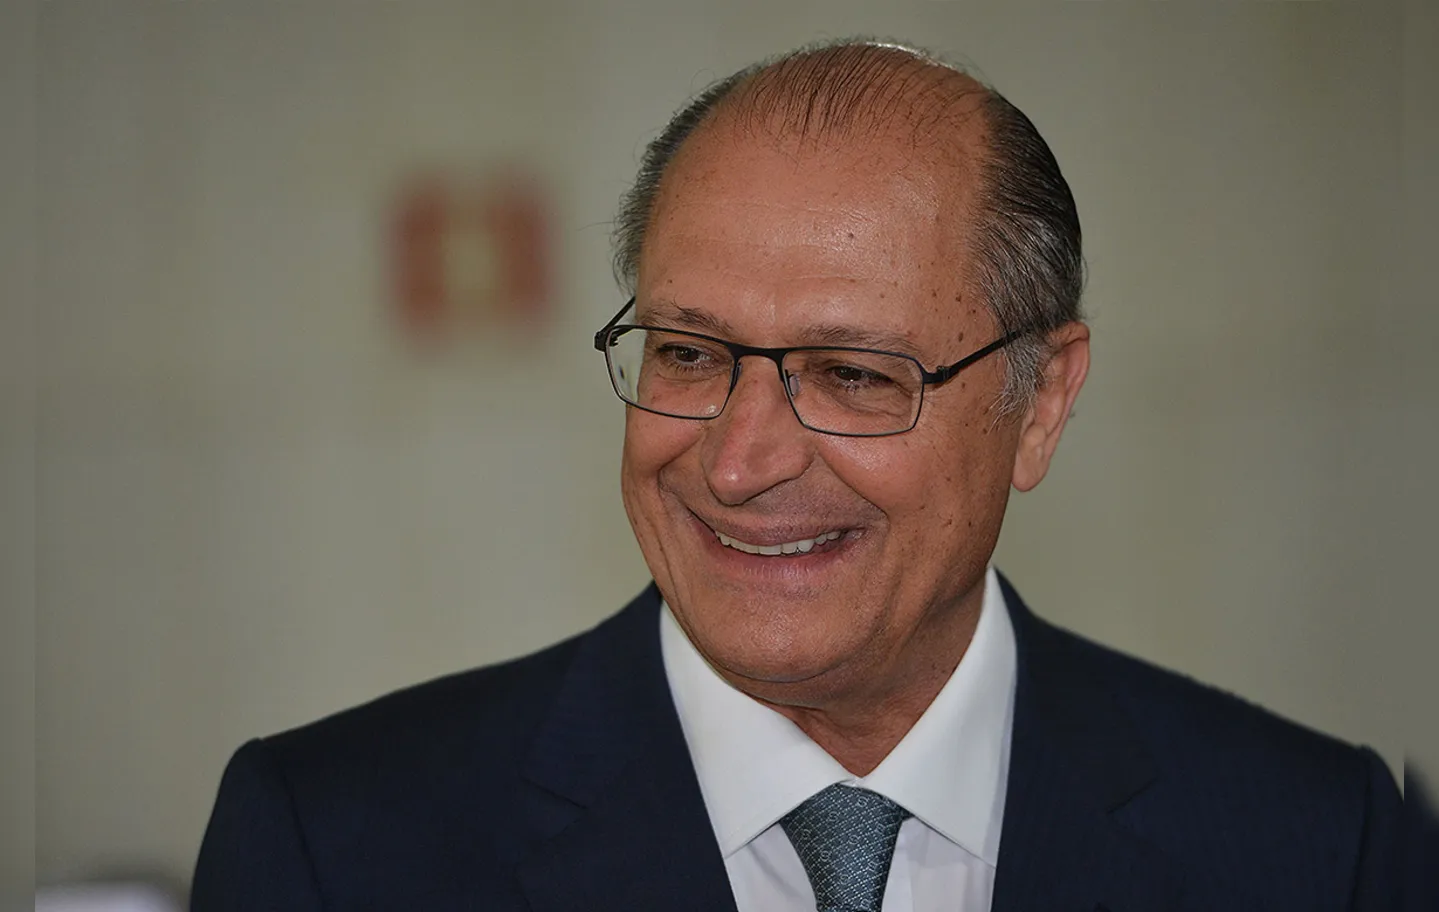 "O que mais cresceu no orçamento deste ano foi a habitação, que foi para R$ 10,4 bilhões este ano”, disse Geraldo Alckmin em discurso